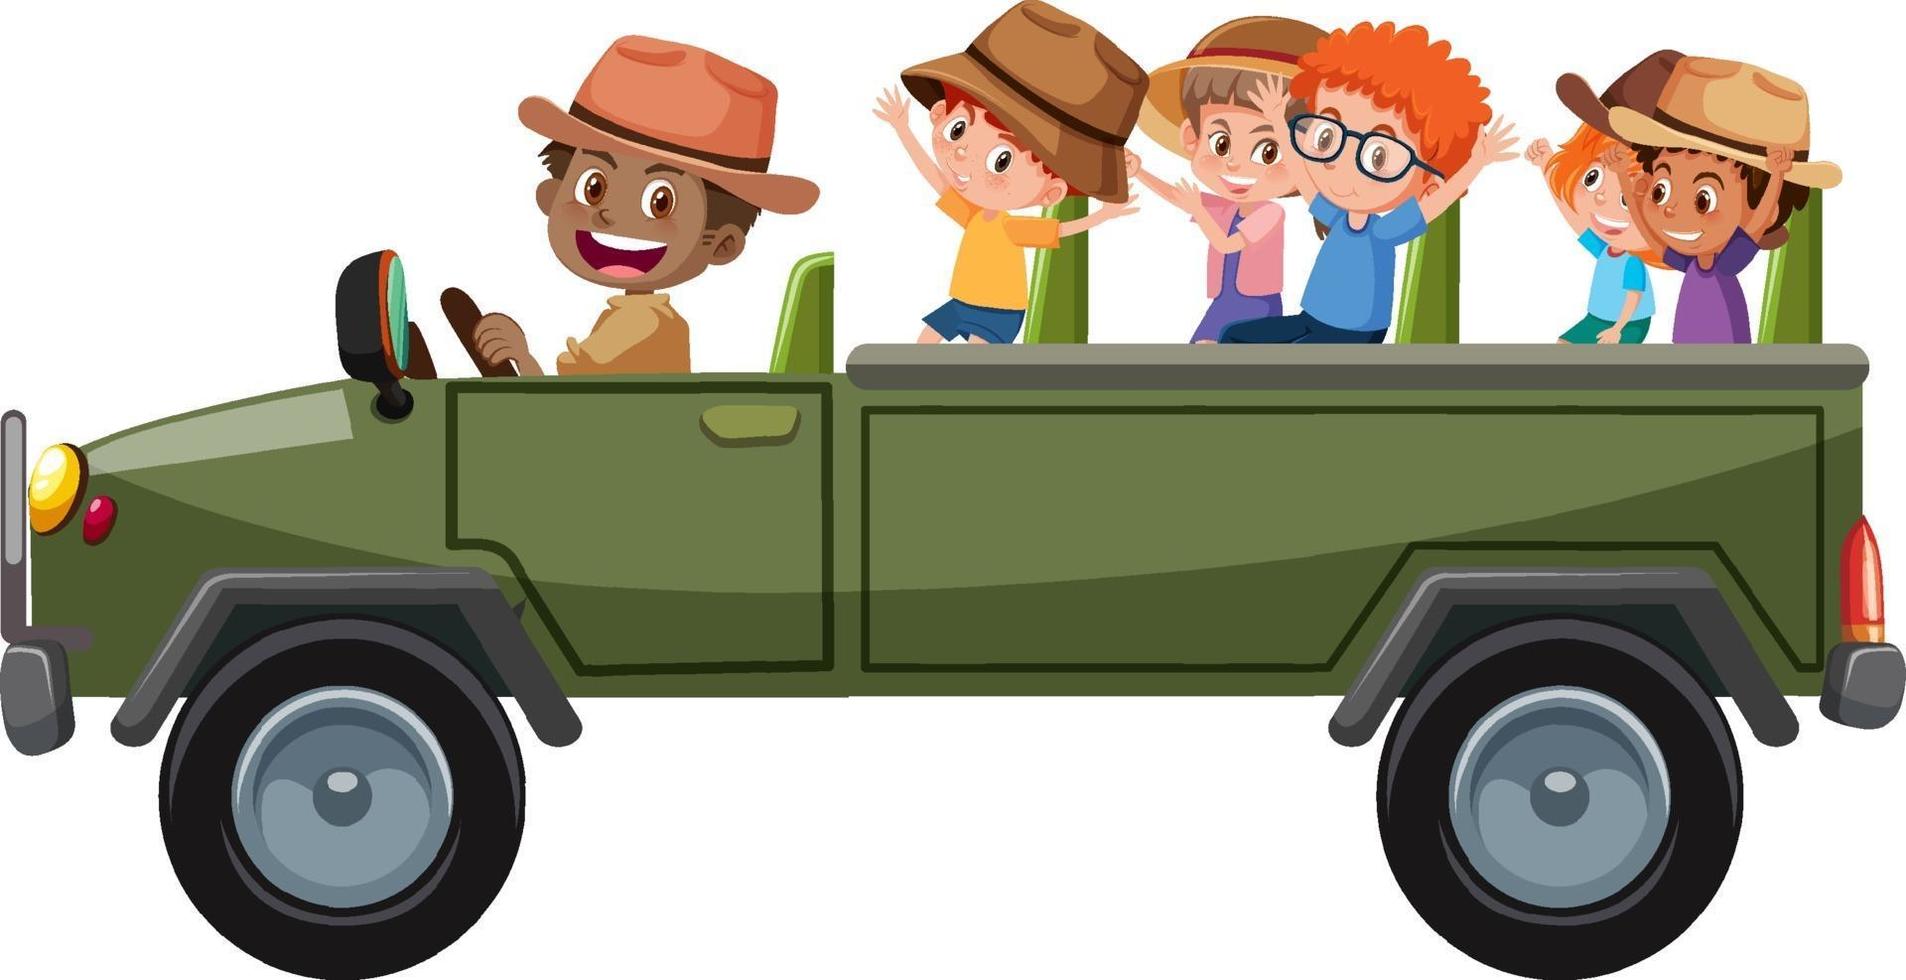 dierentuin concept met kinderen op toeristische auto geïsoleerd op een witte achtergrond vector